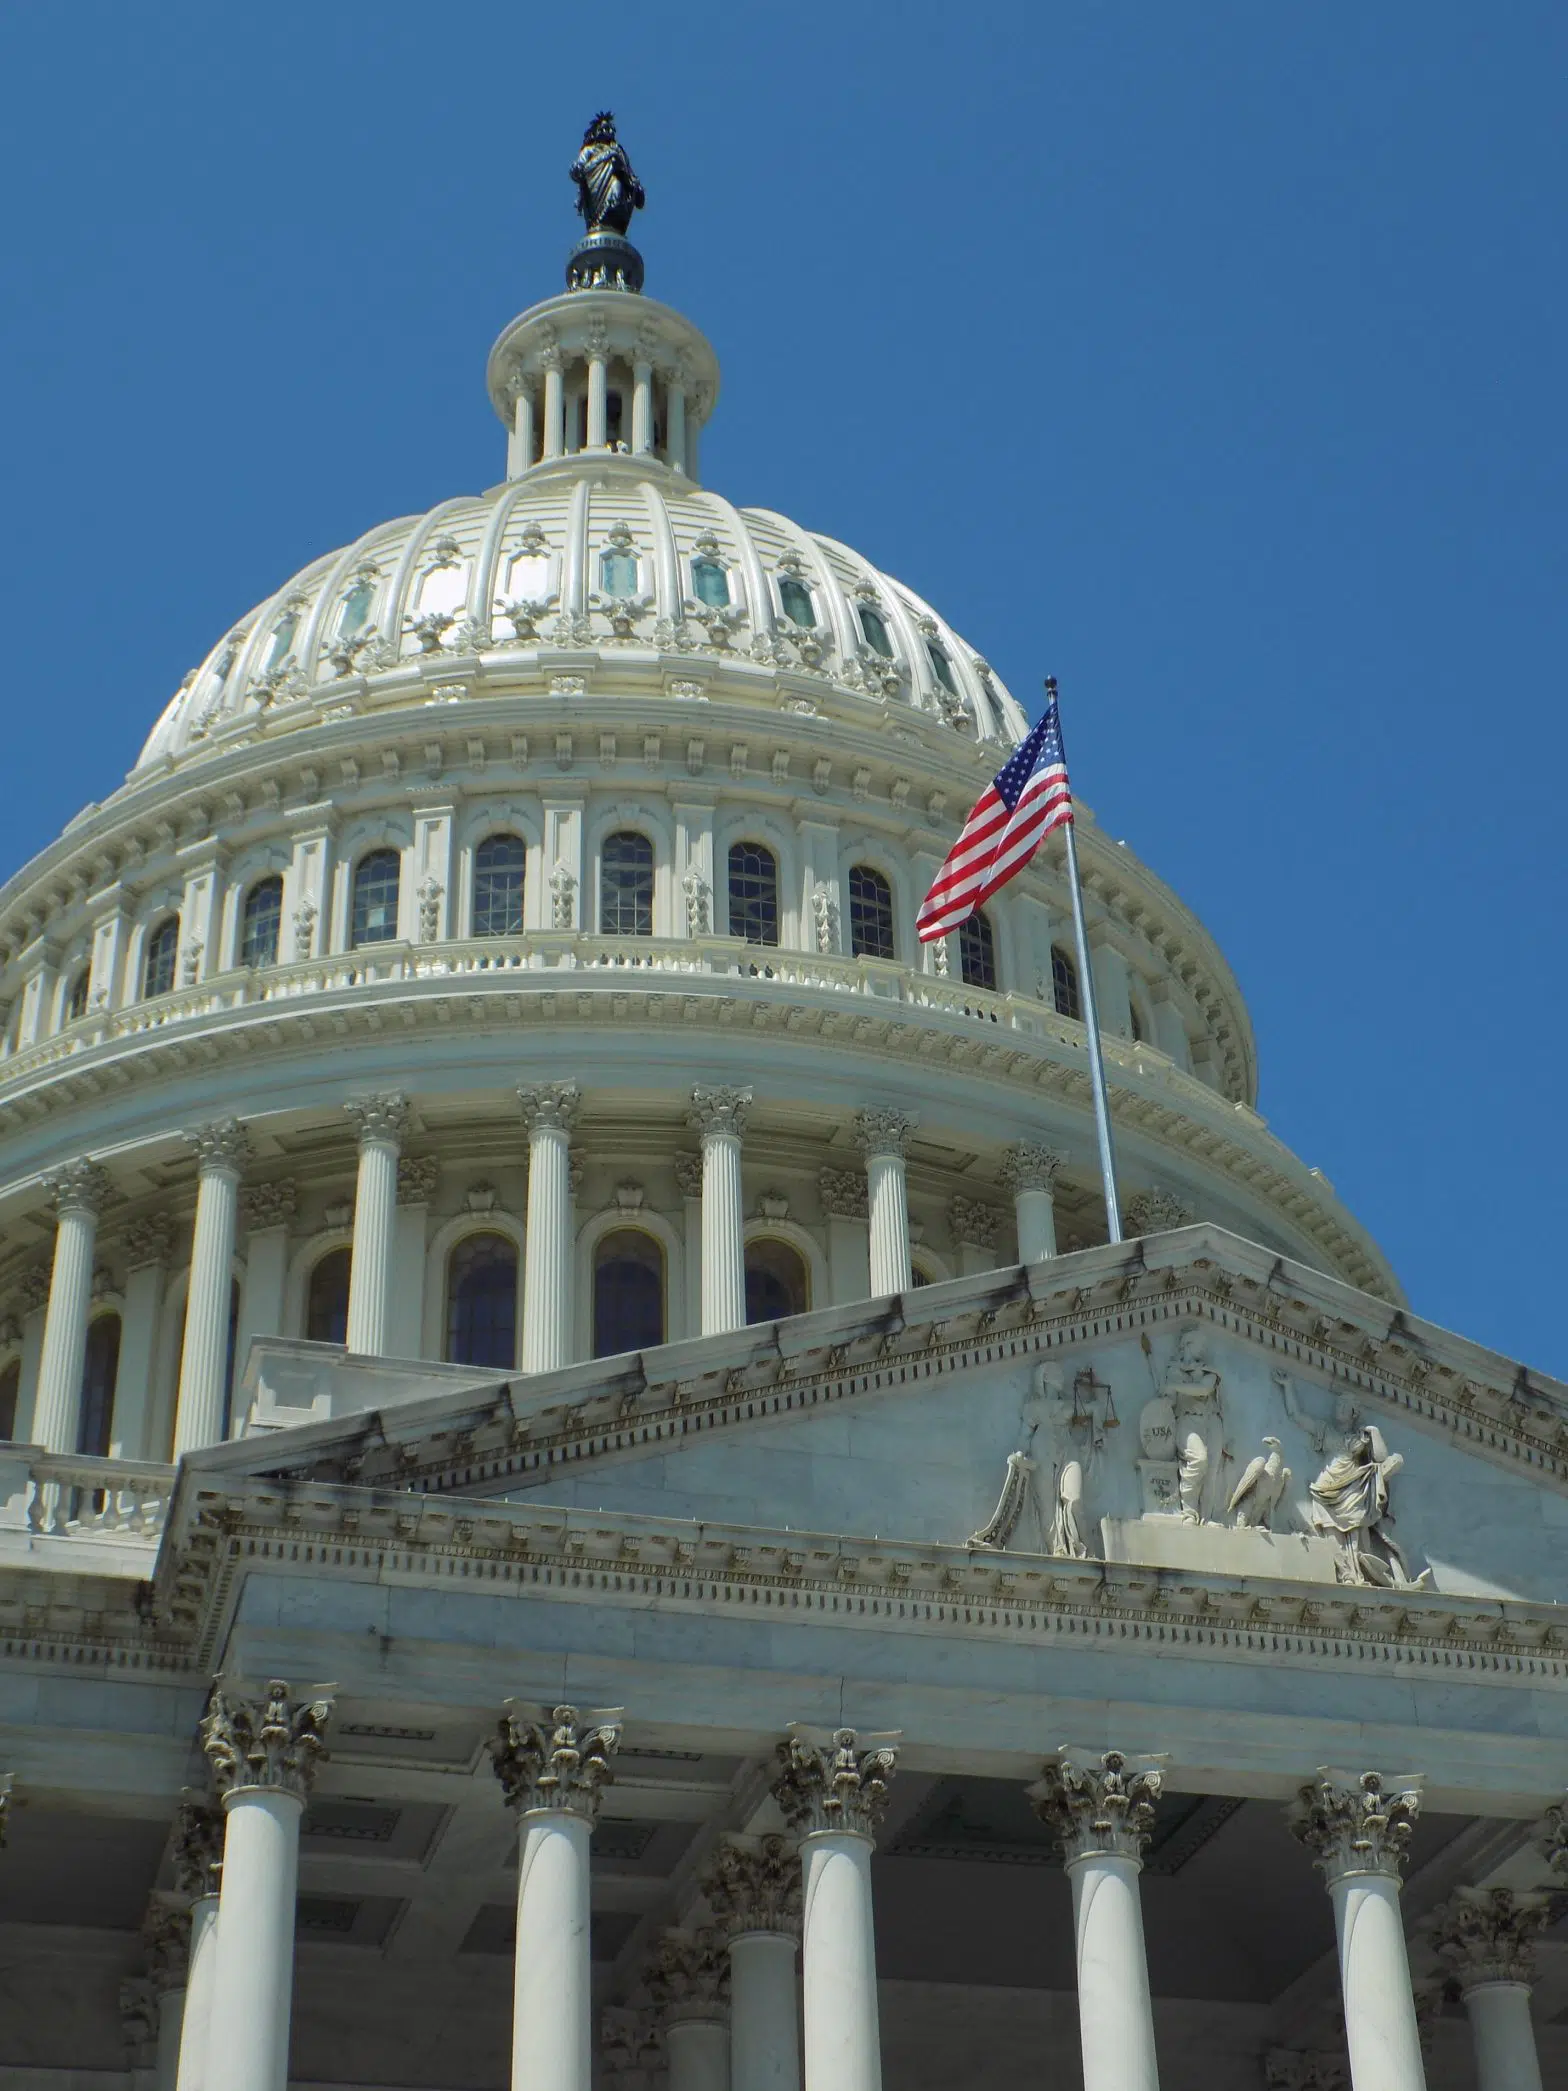 Senate Passes Stopgap Funding Legislation, Hours Before Deadline